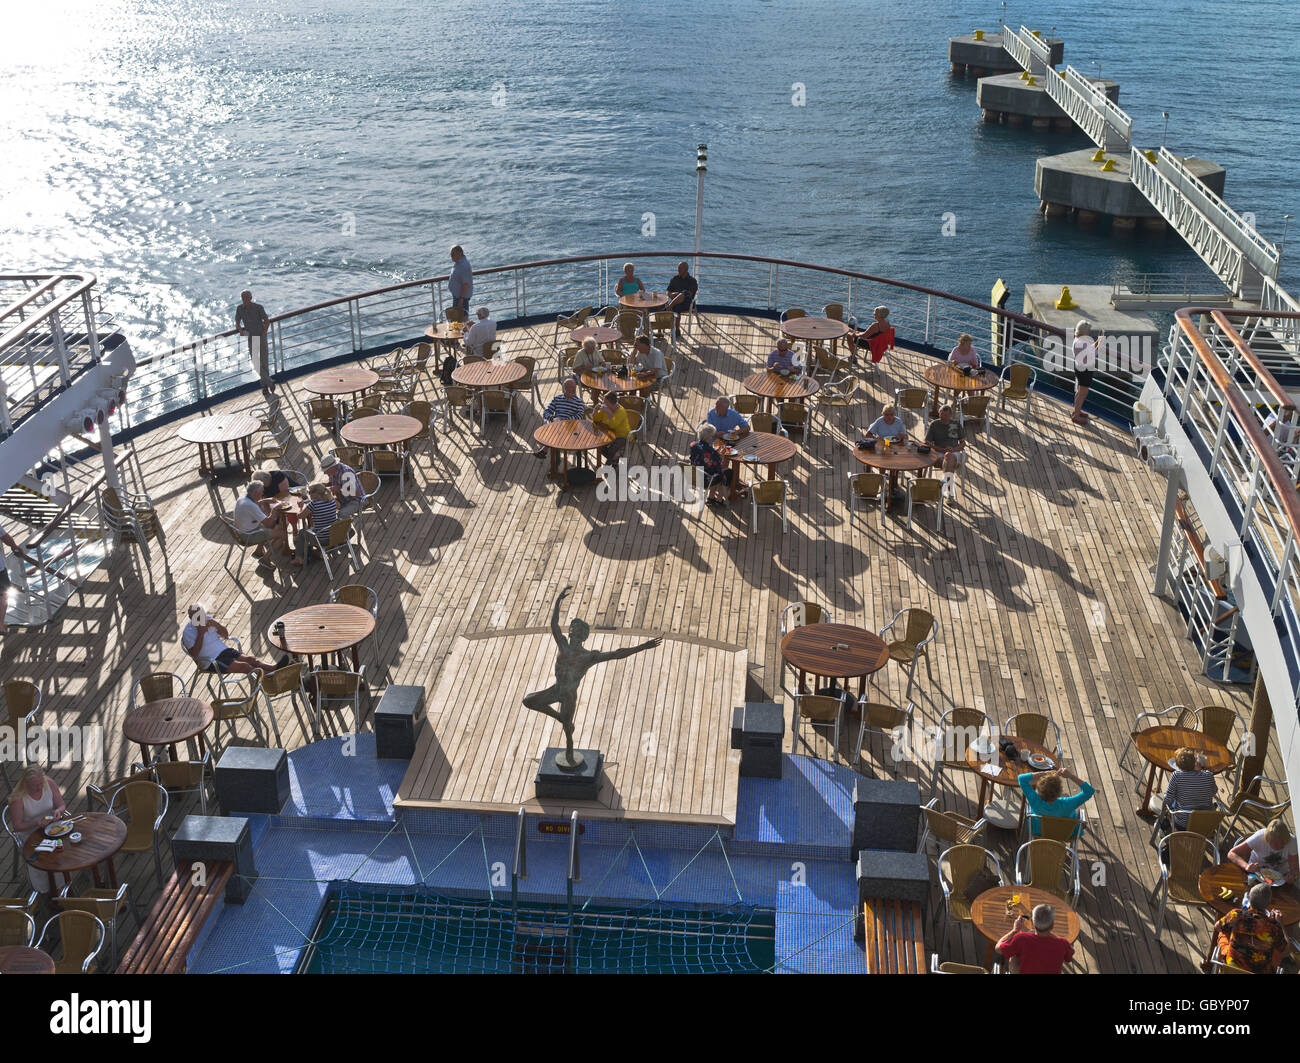 dh Marco Polo Kreuzfahrt Schiff Karibik Aft Deck Passagiere genießen Sie am Abend die Sonne der Karibik an Bord Menschen liner Stockfoto